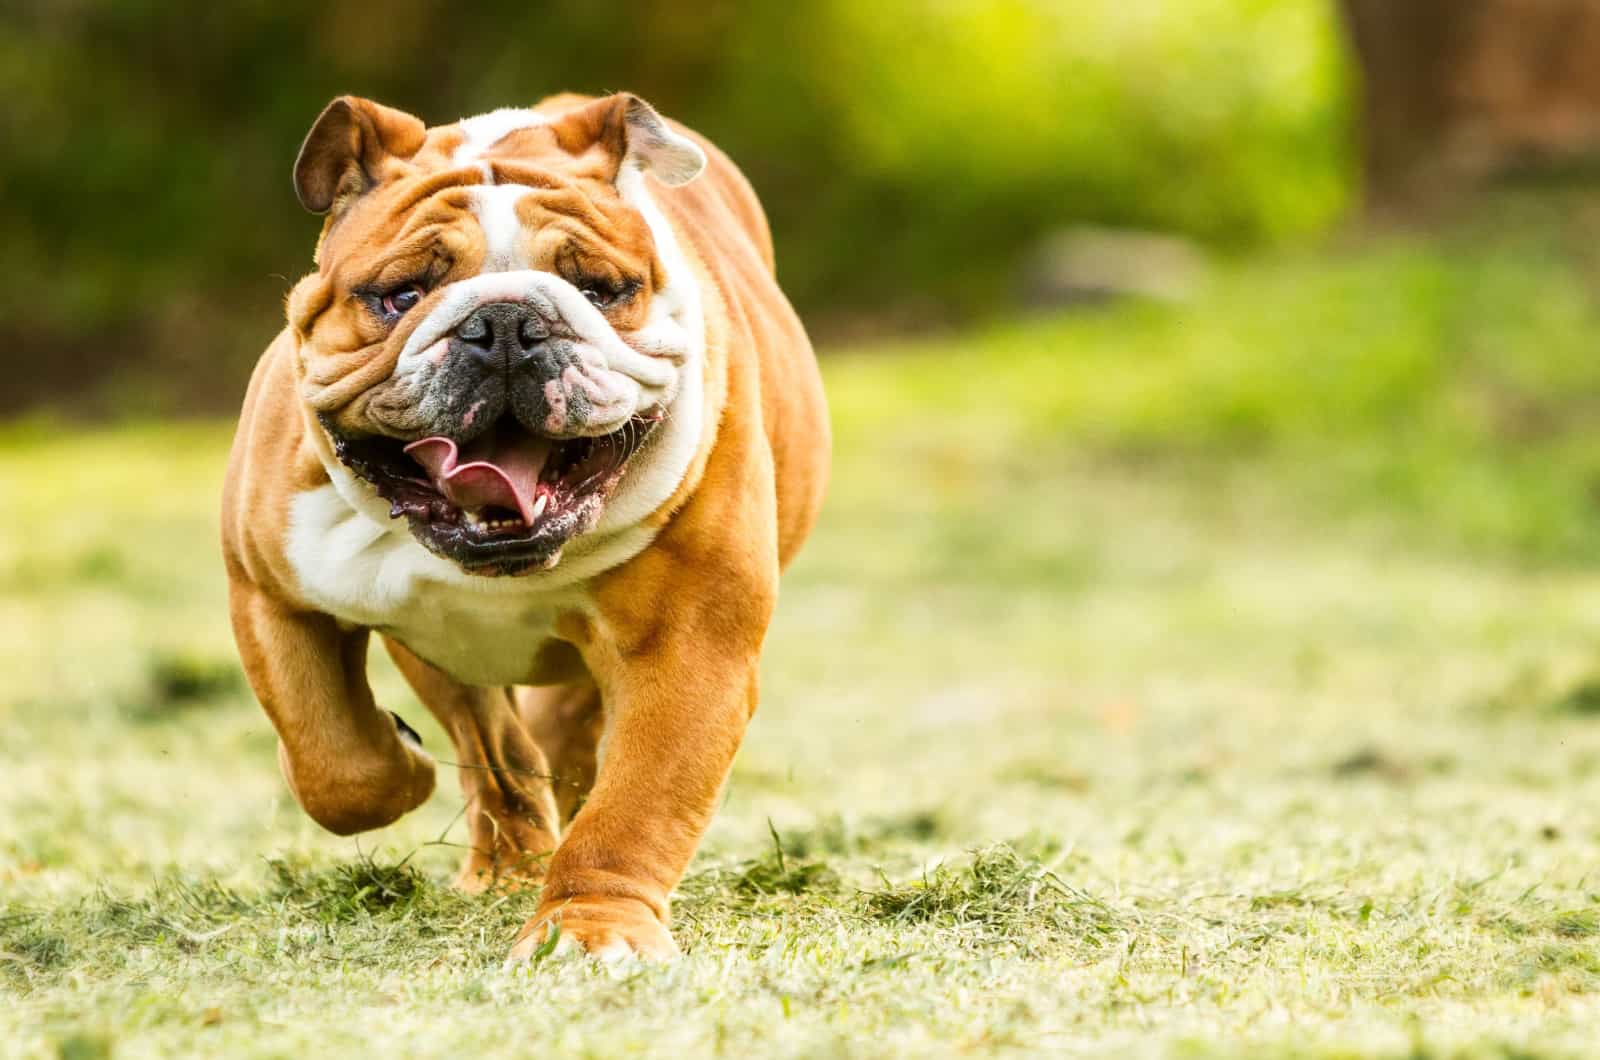 Bulldog running